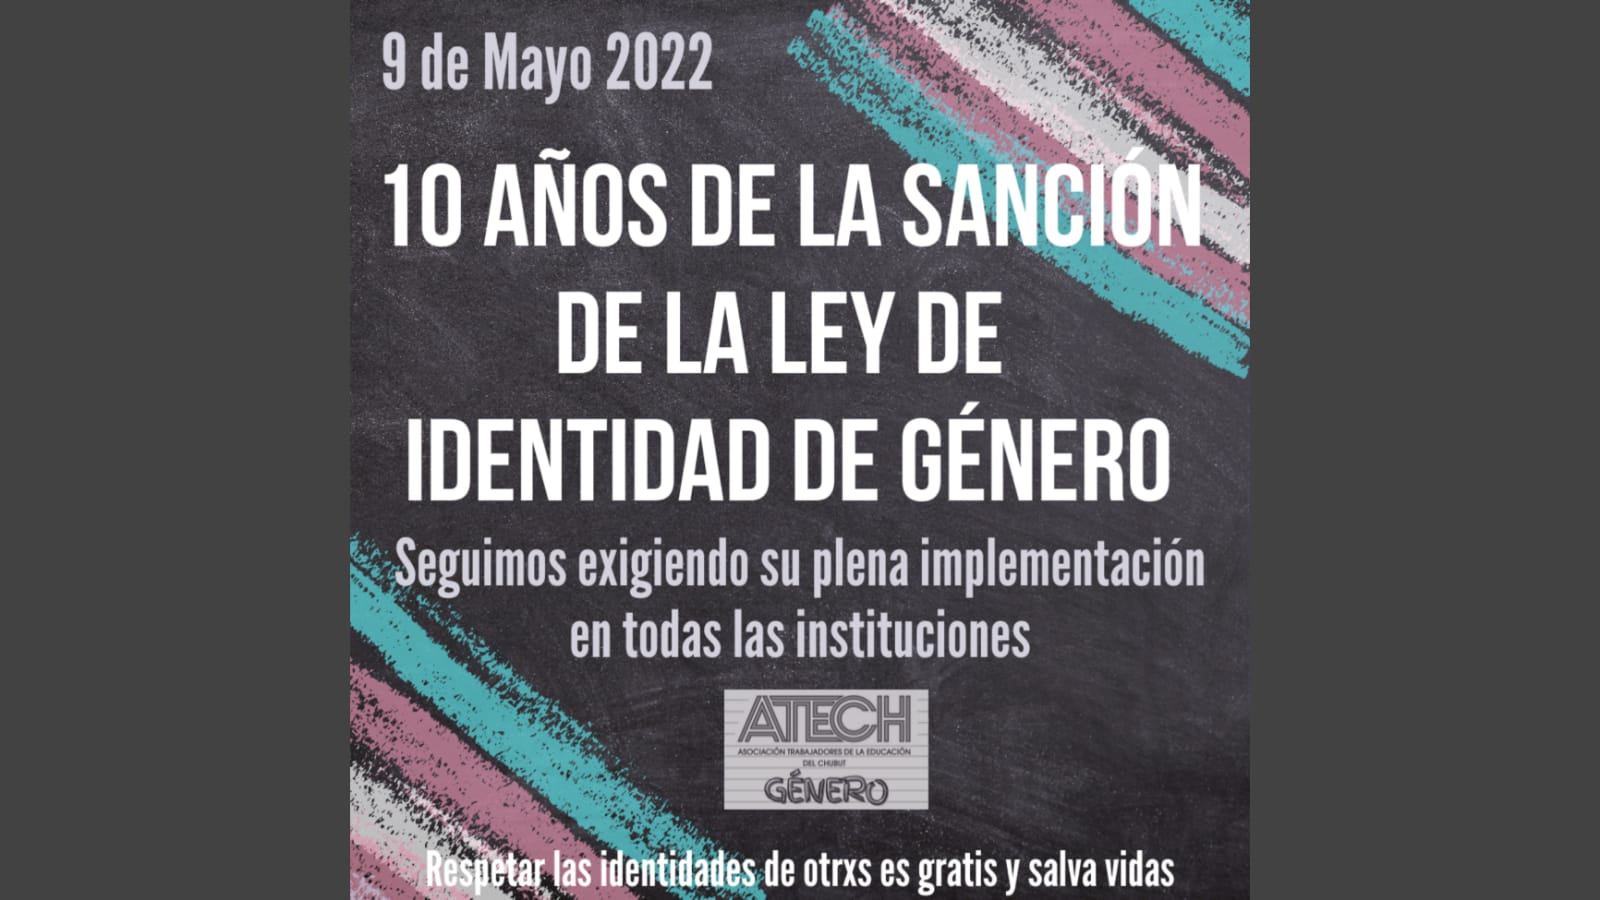 A 10 años de la sanción de la Ley N° 26.743 de Identidad de Género en Argentina